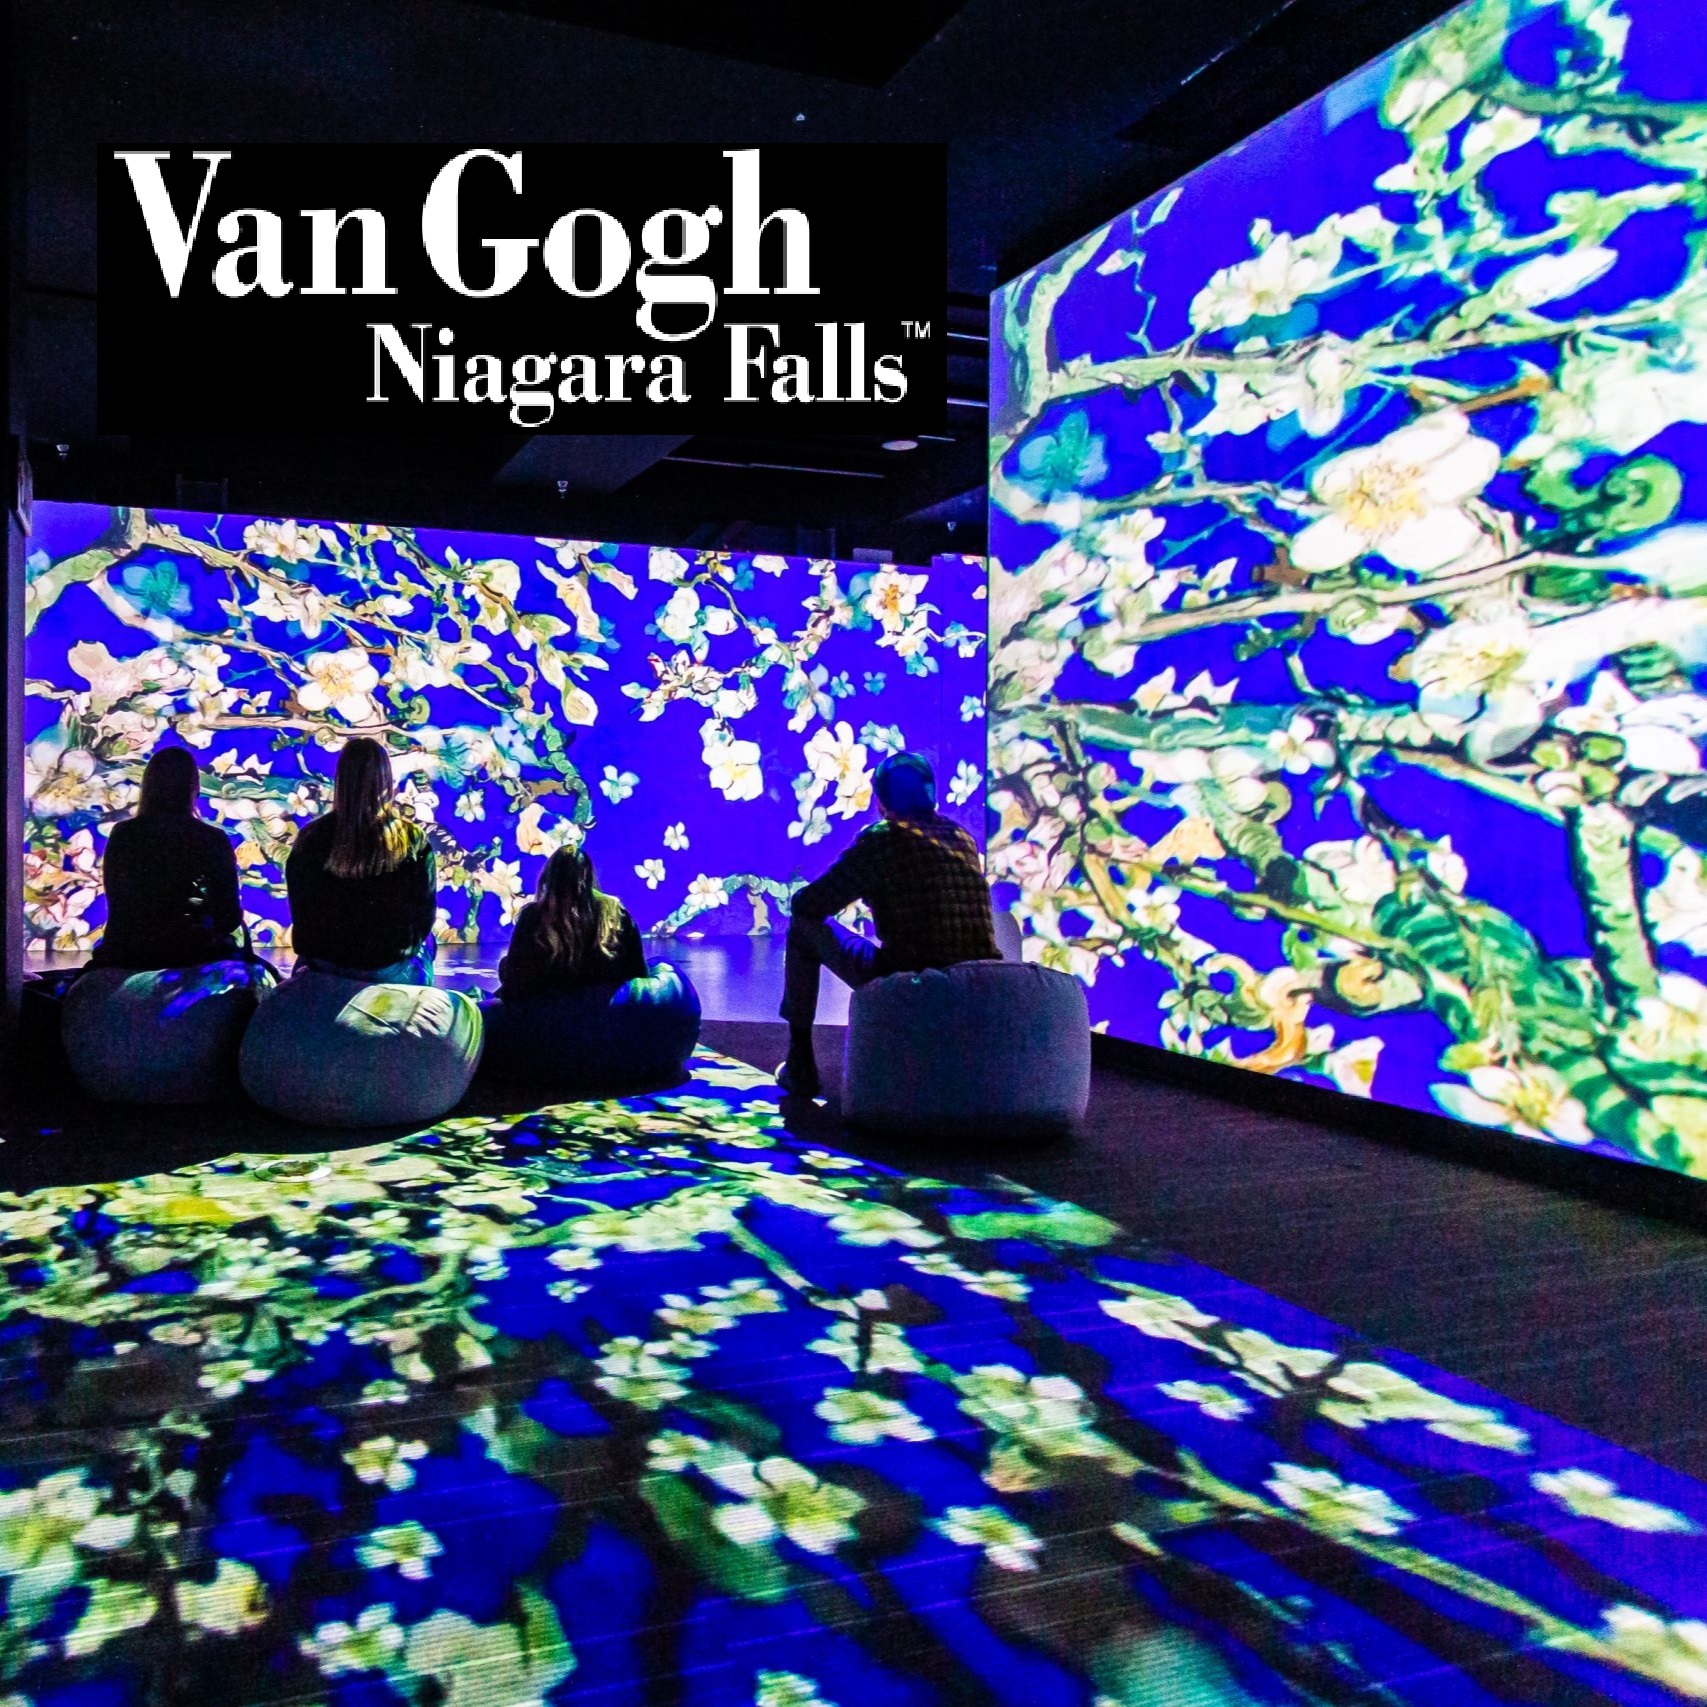 Van Gogh Niagara Falls